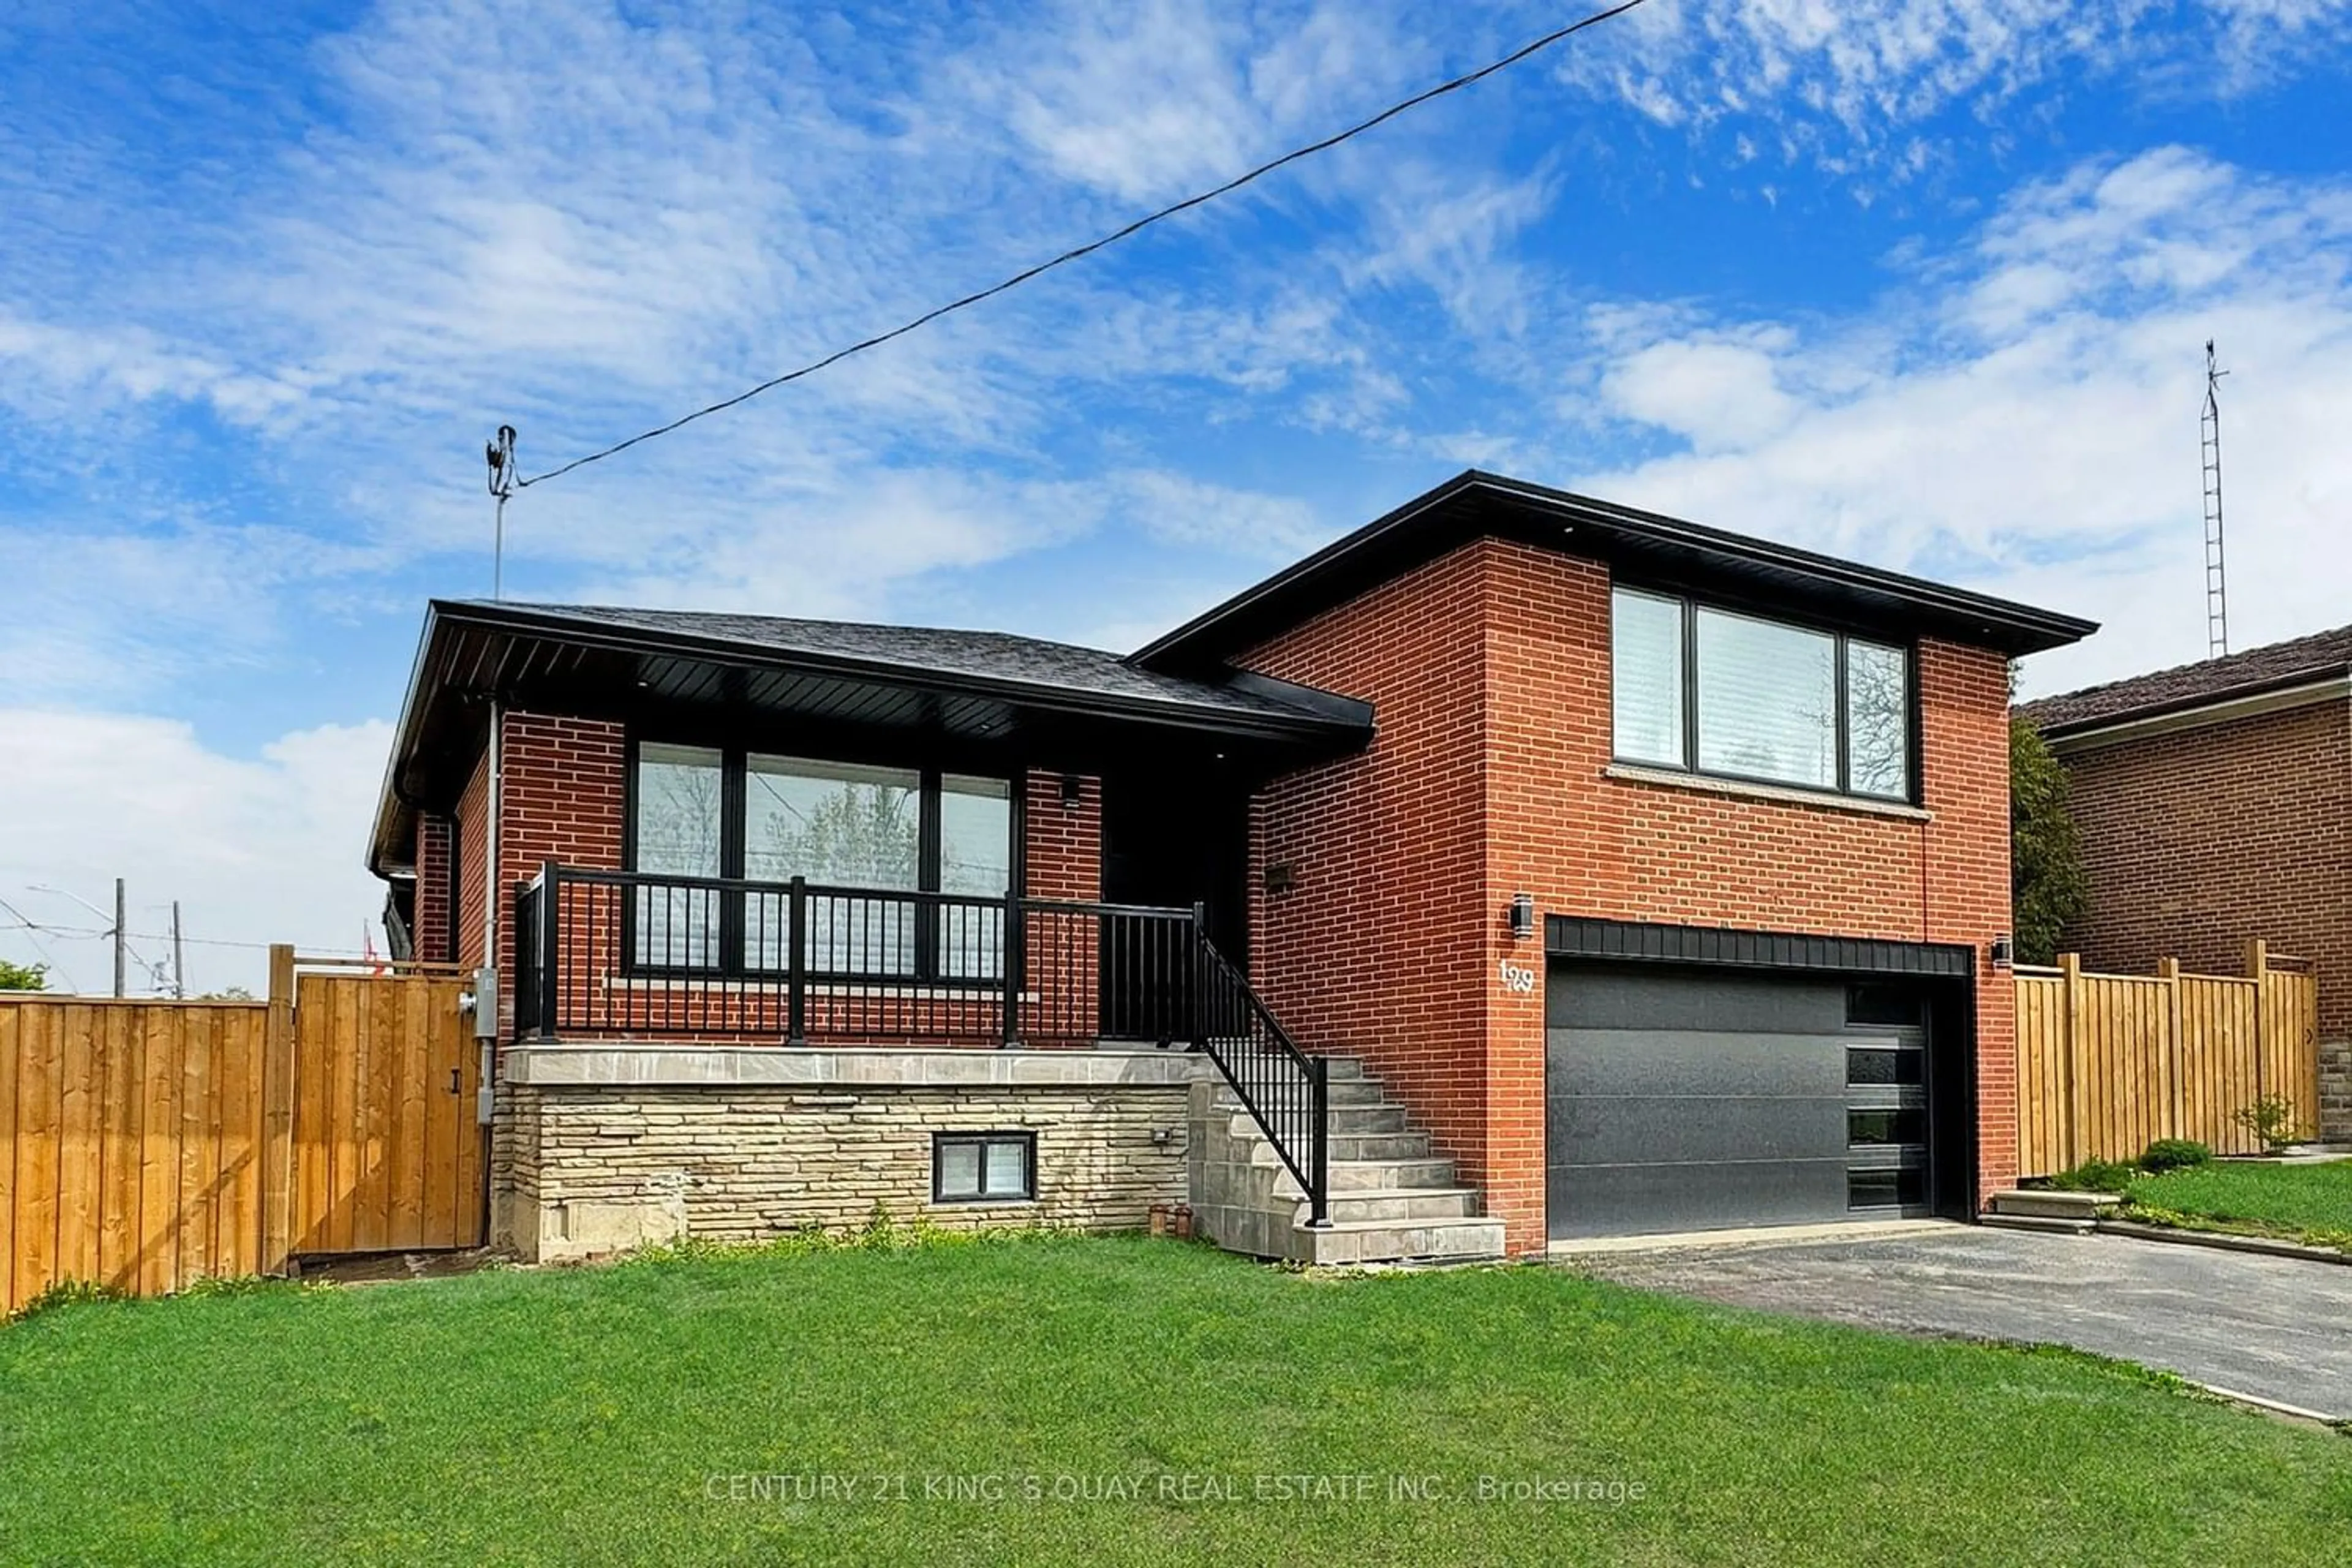 Home with brick exterior material for 129 Exbury Rd, Toronto Ontario M3M 1R5